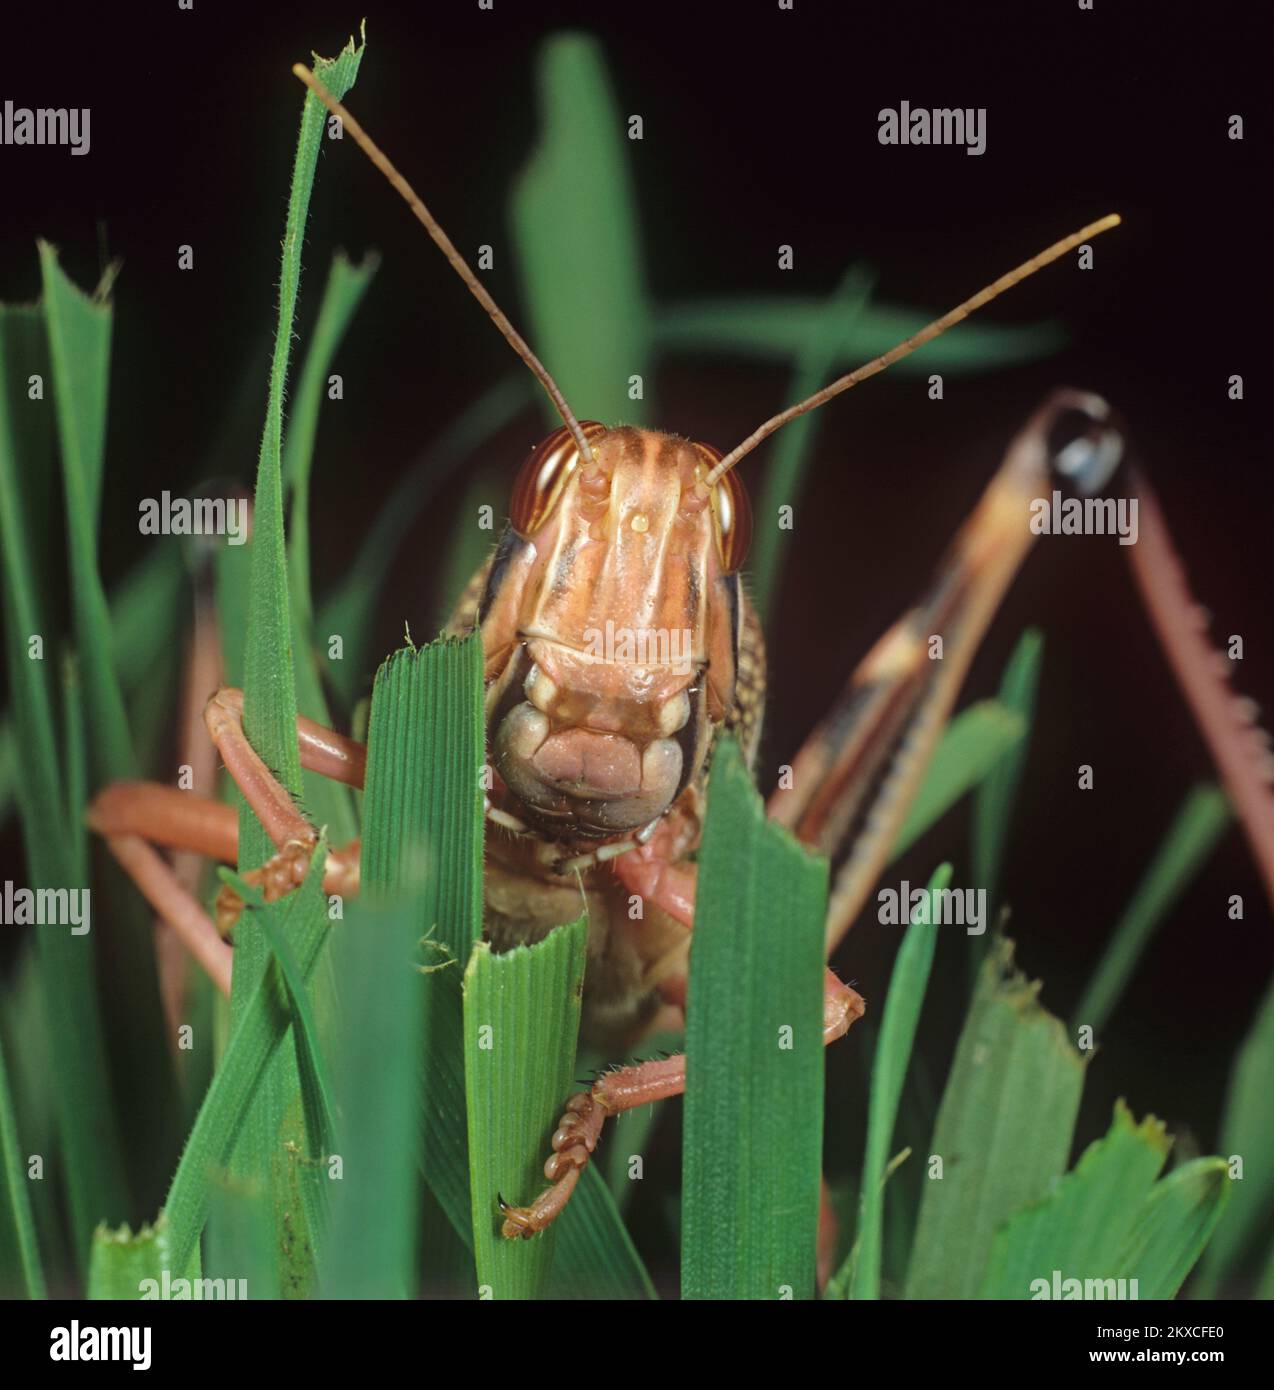 Tête, jambes et antennes de criquet pèlerin (Schistocerca gregaria) adulte, coloration rose, alimentation sur feuilles de blé, studio Banque D'Images